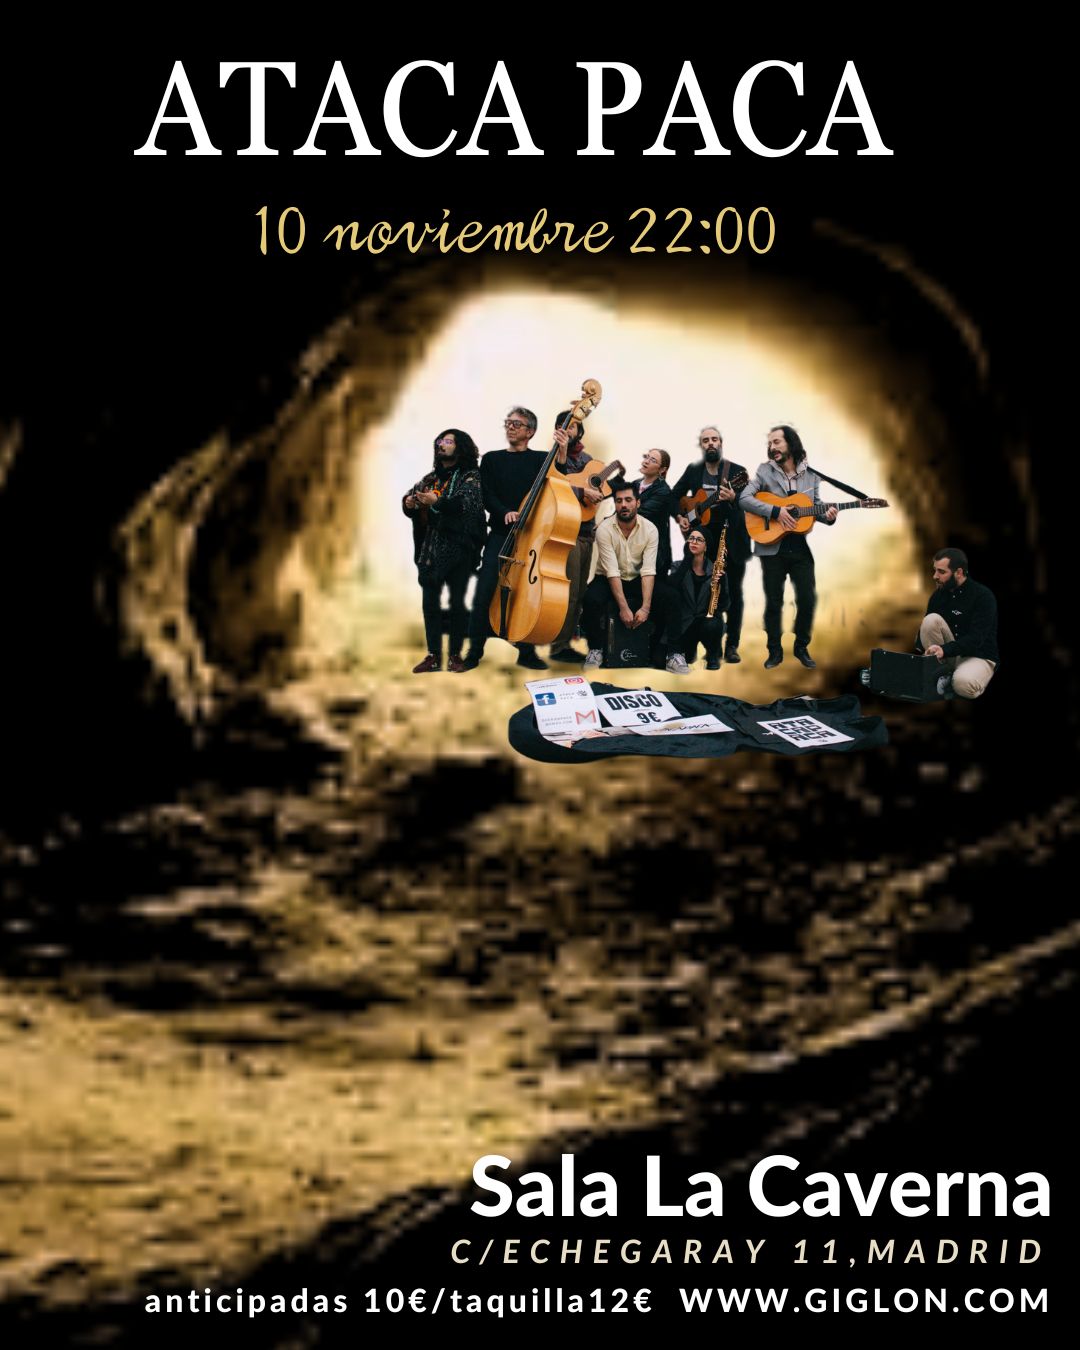 Discos Caverna Musica